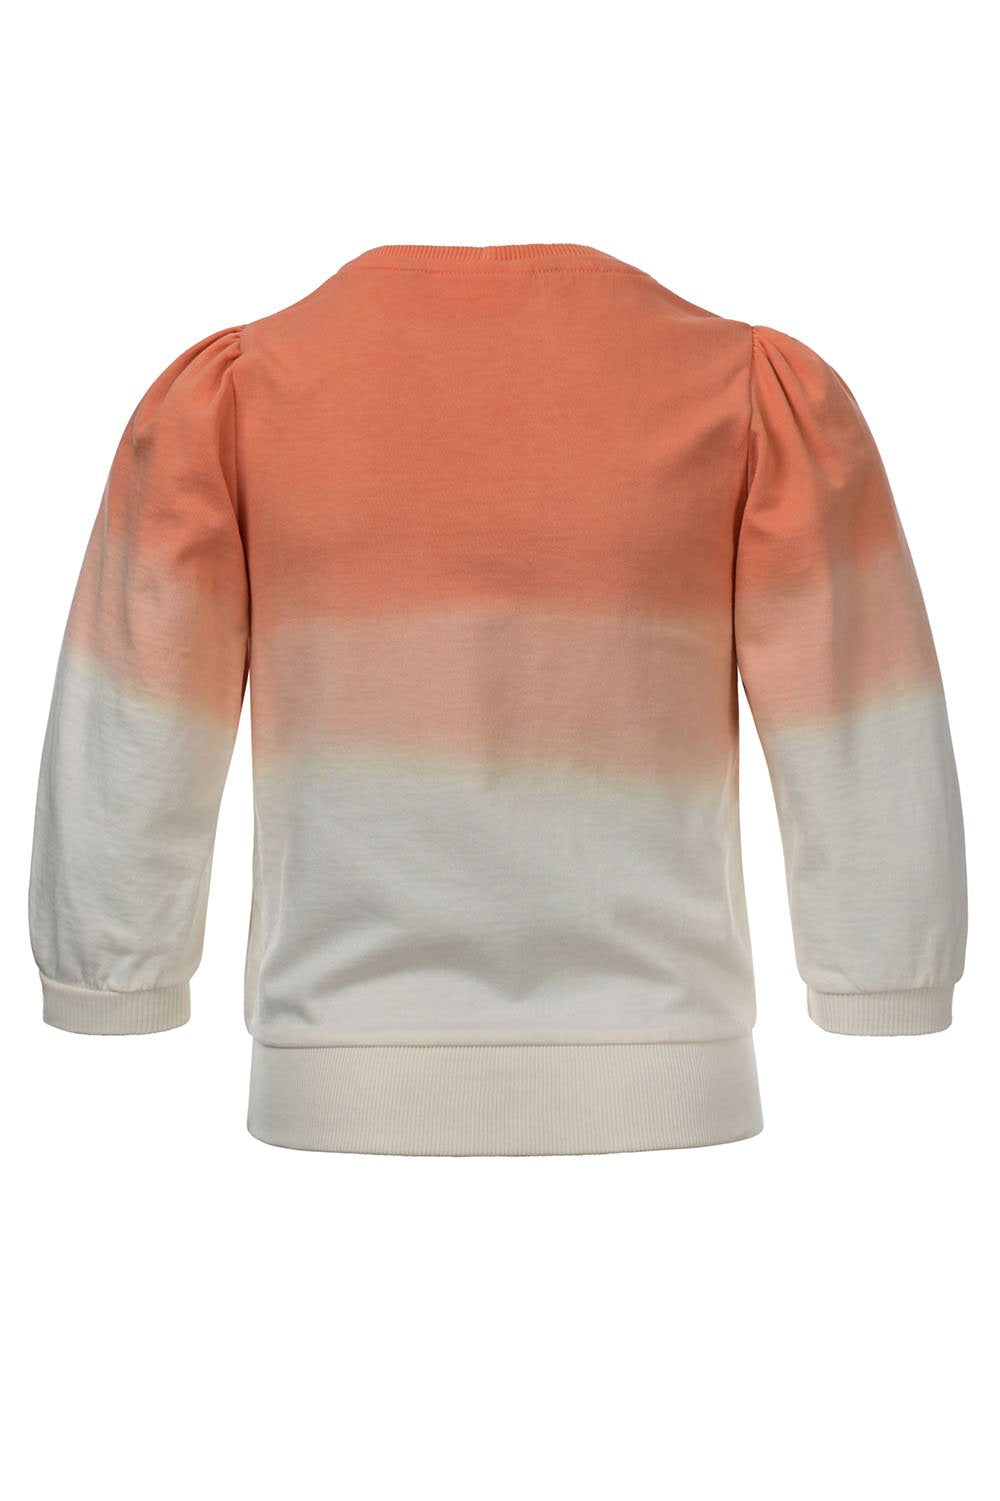 Meisjes Dip dye Sweater van LOOXS 10sixteen in de kleur SALMON in maat 176.